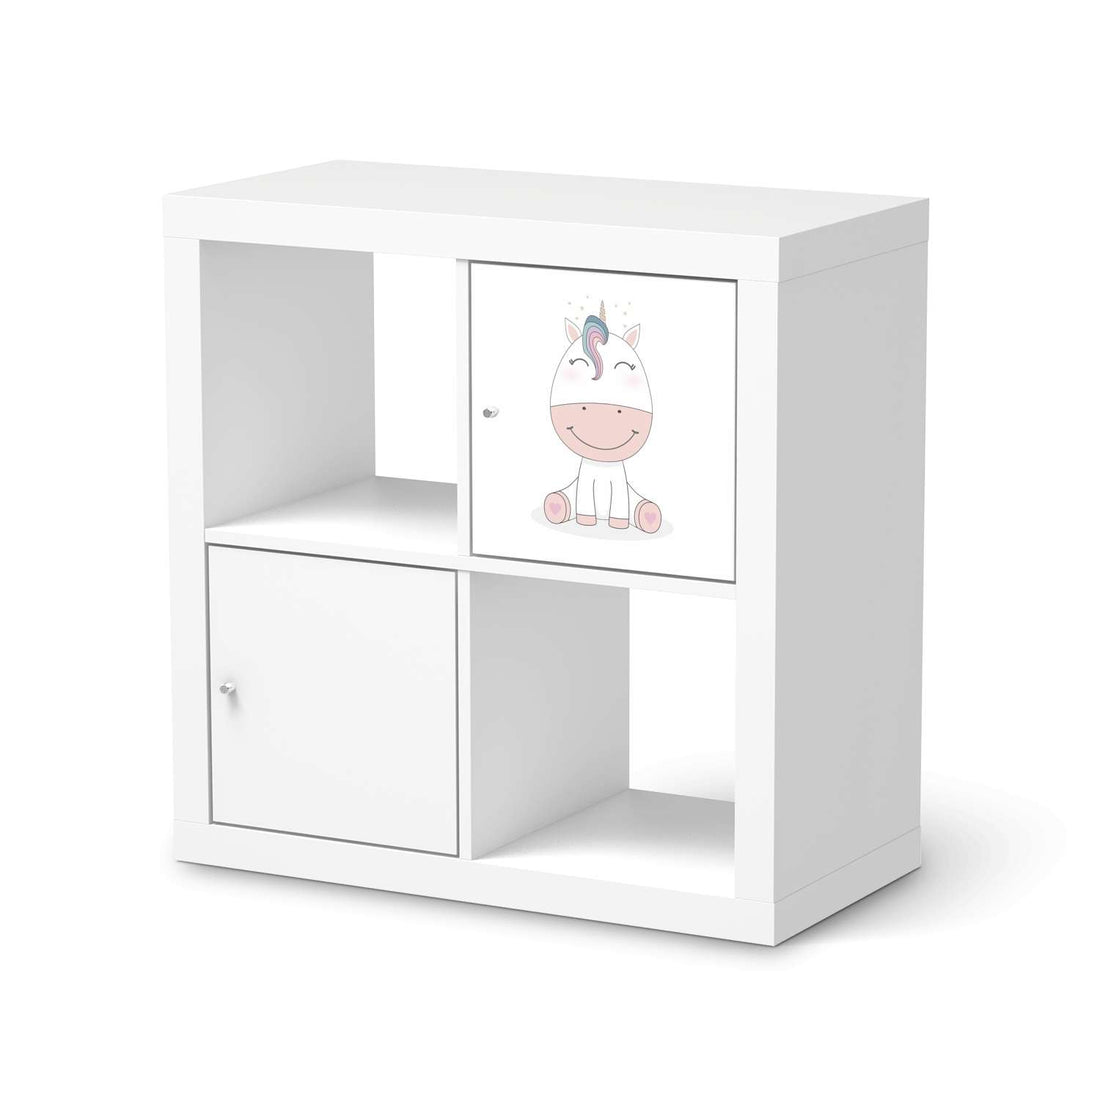 Selbstklebende Folie Baby Unicorn - IKEA Kallax Regal 1 Türe  - weiss